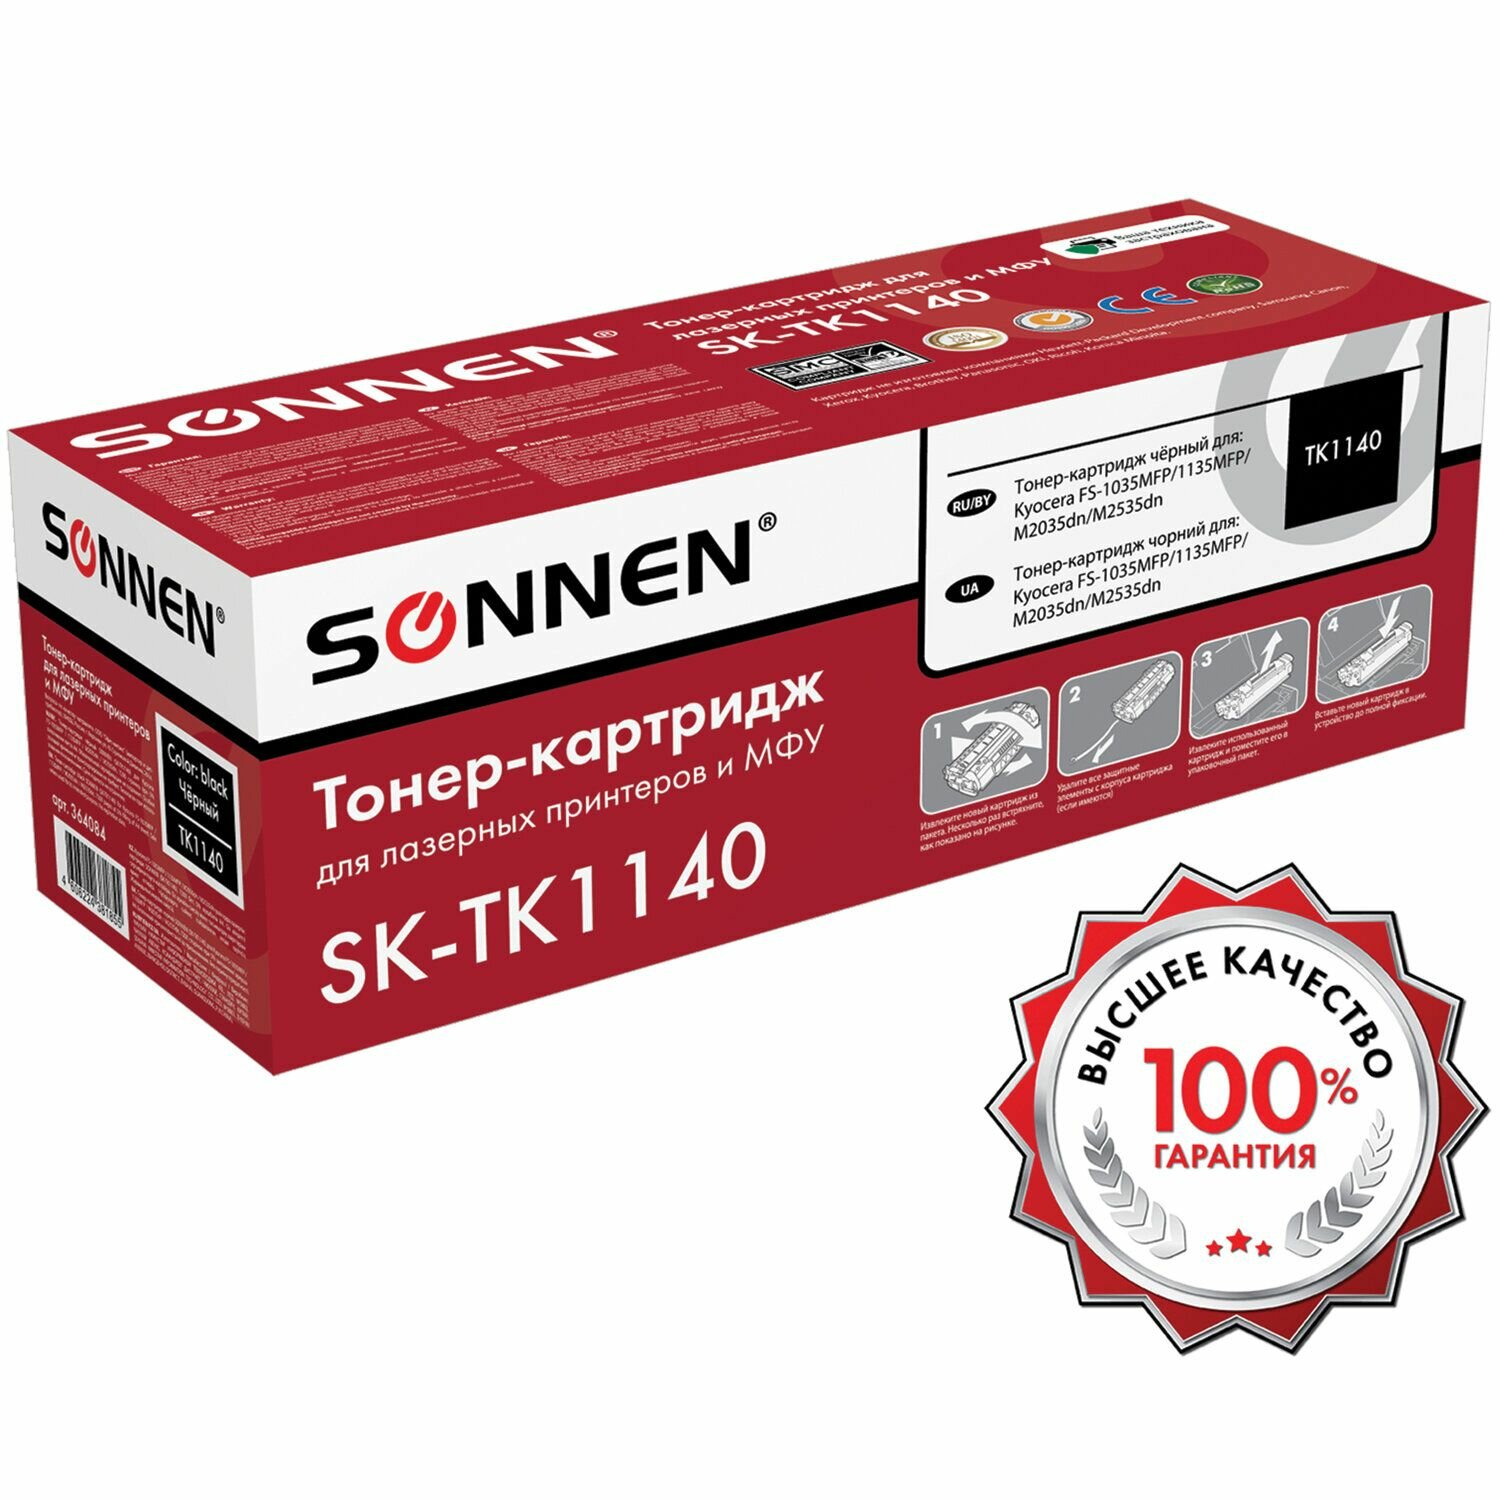 Тонер-картридж лазерный SONNEN (SK-TK1140) для KYOCERA FS-1035MFP/1135MFP/M2035dn/M2535dn, ресурс 7200 стр.